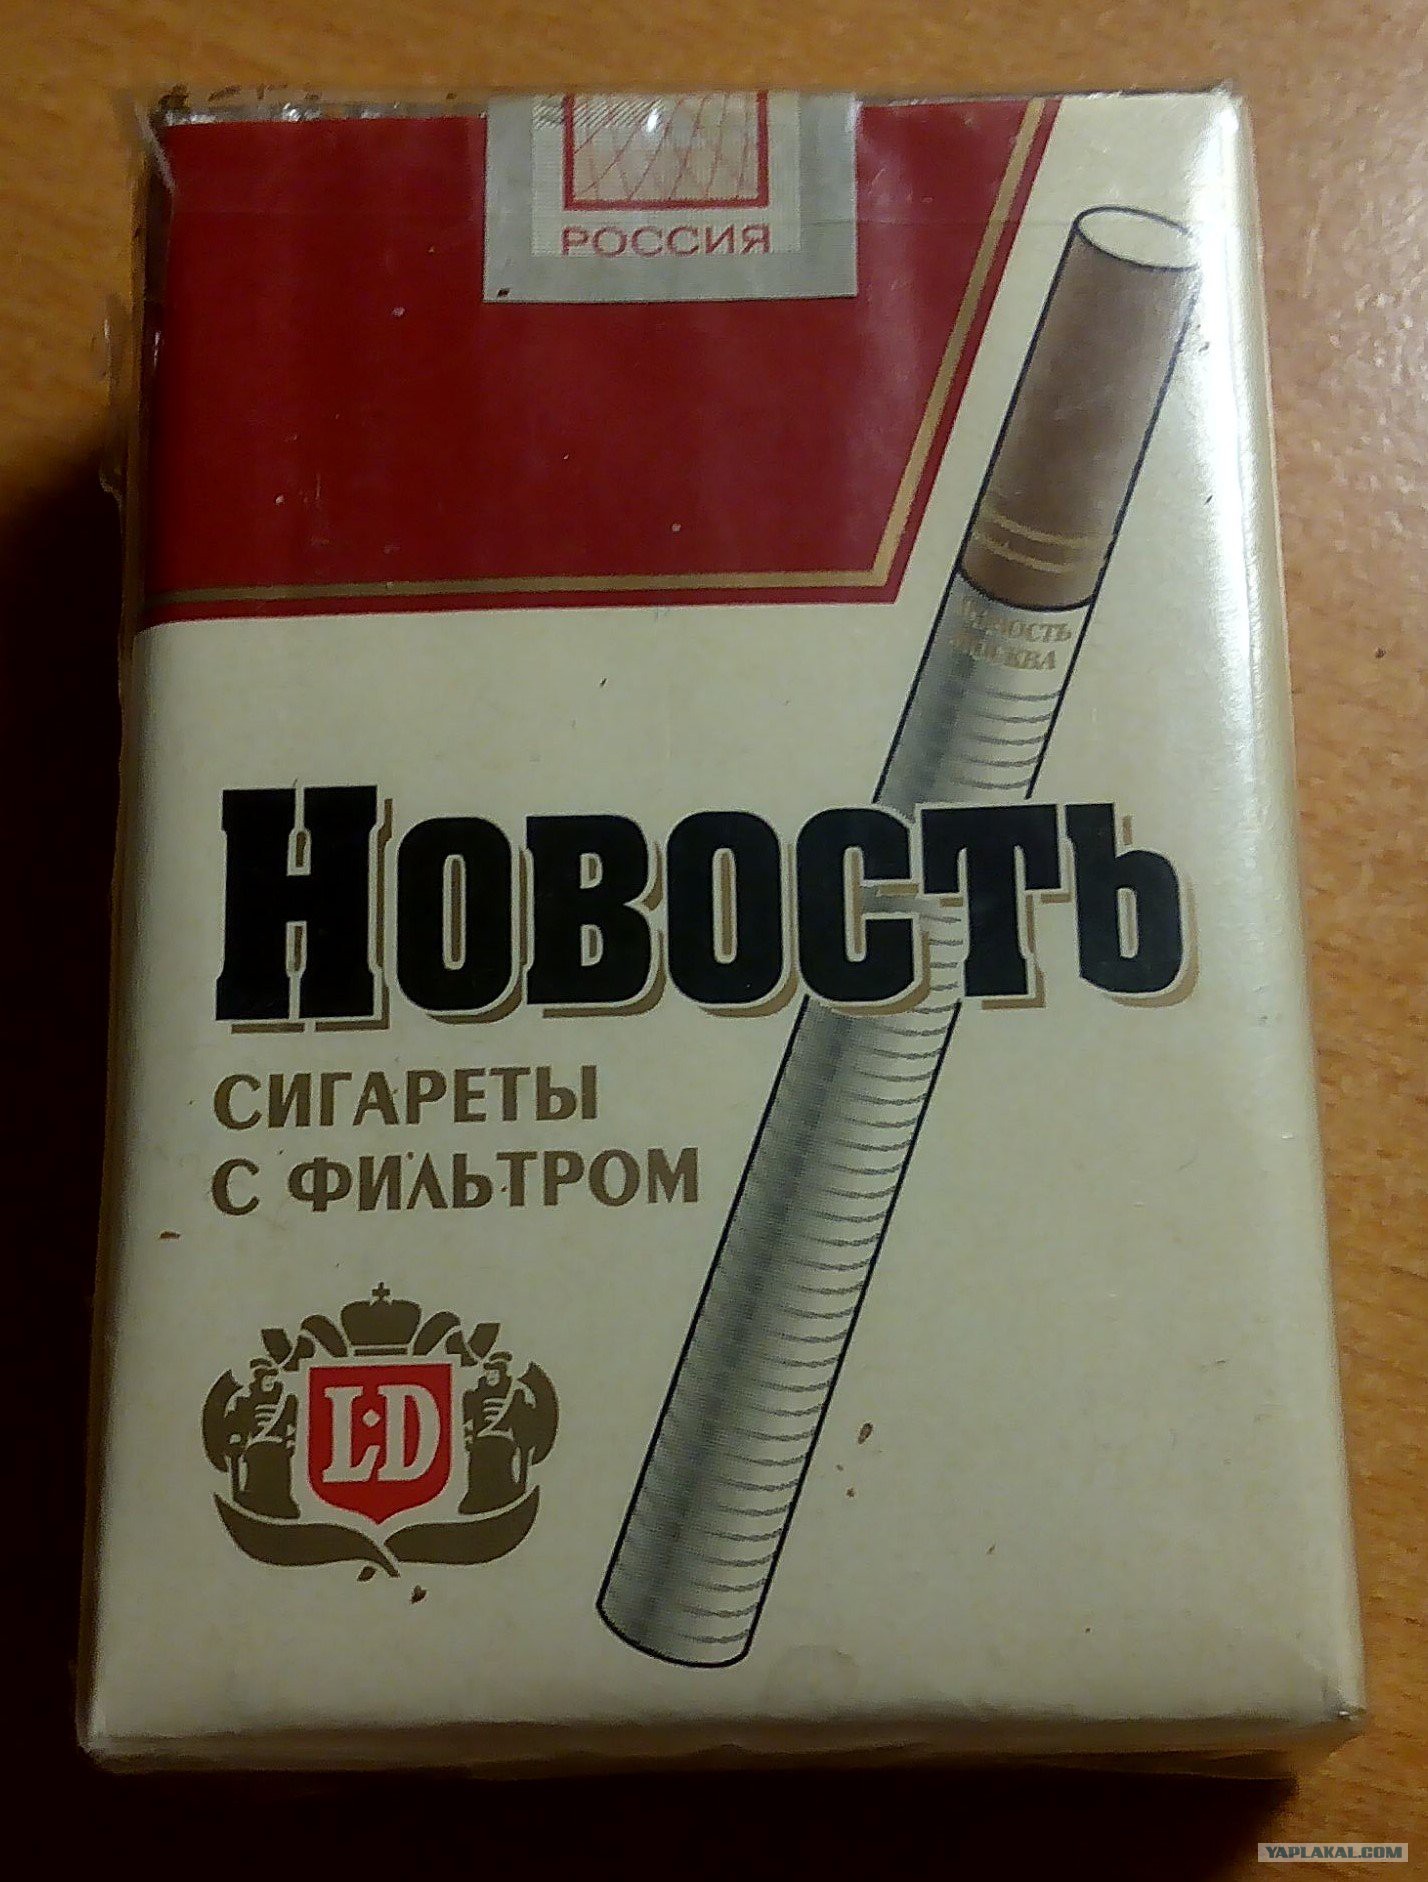 Сигареты с фильтром названия. Сигареты новость. Сигареты с фильтром 2000. Сигареты новость фильтр. Сигареты СССР.